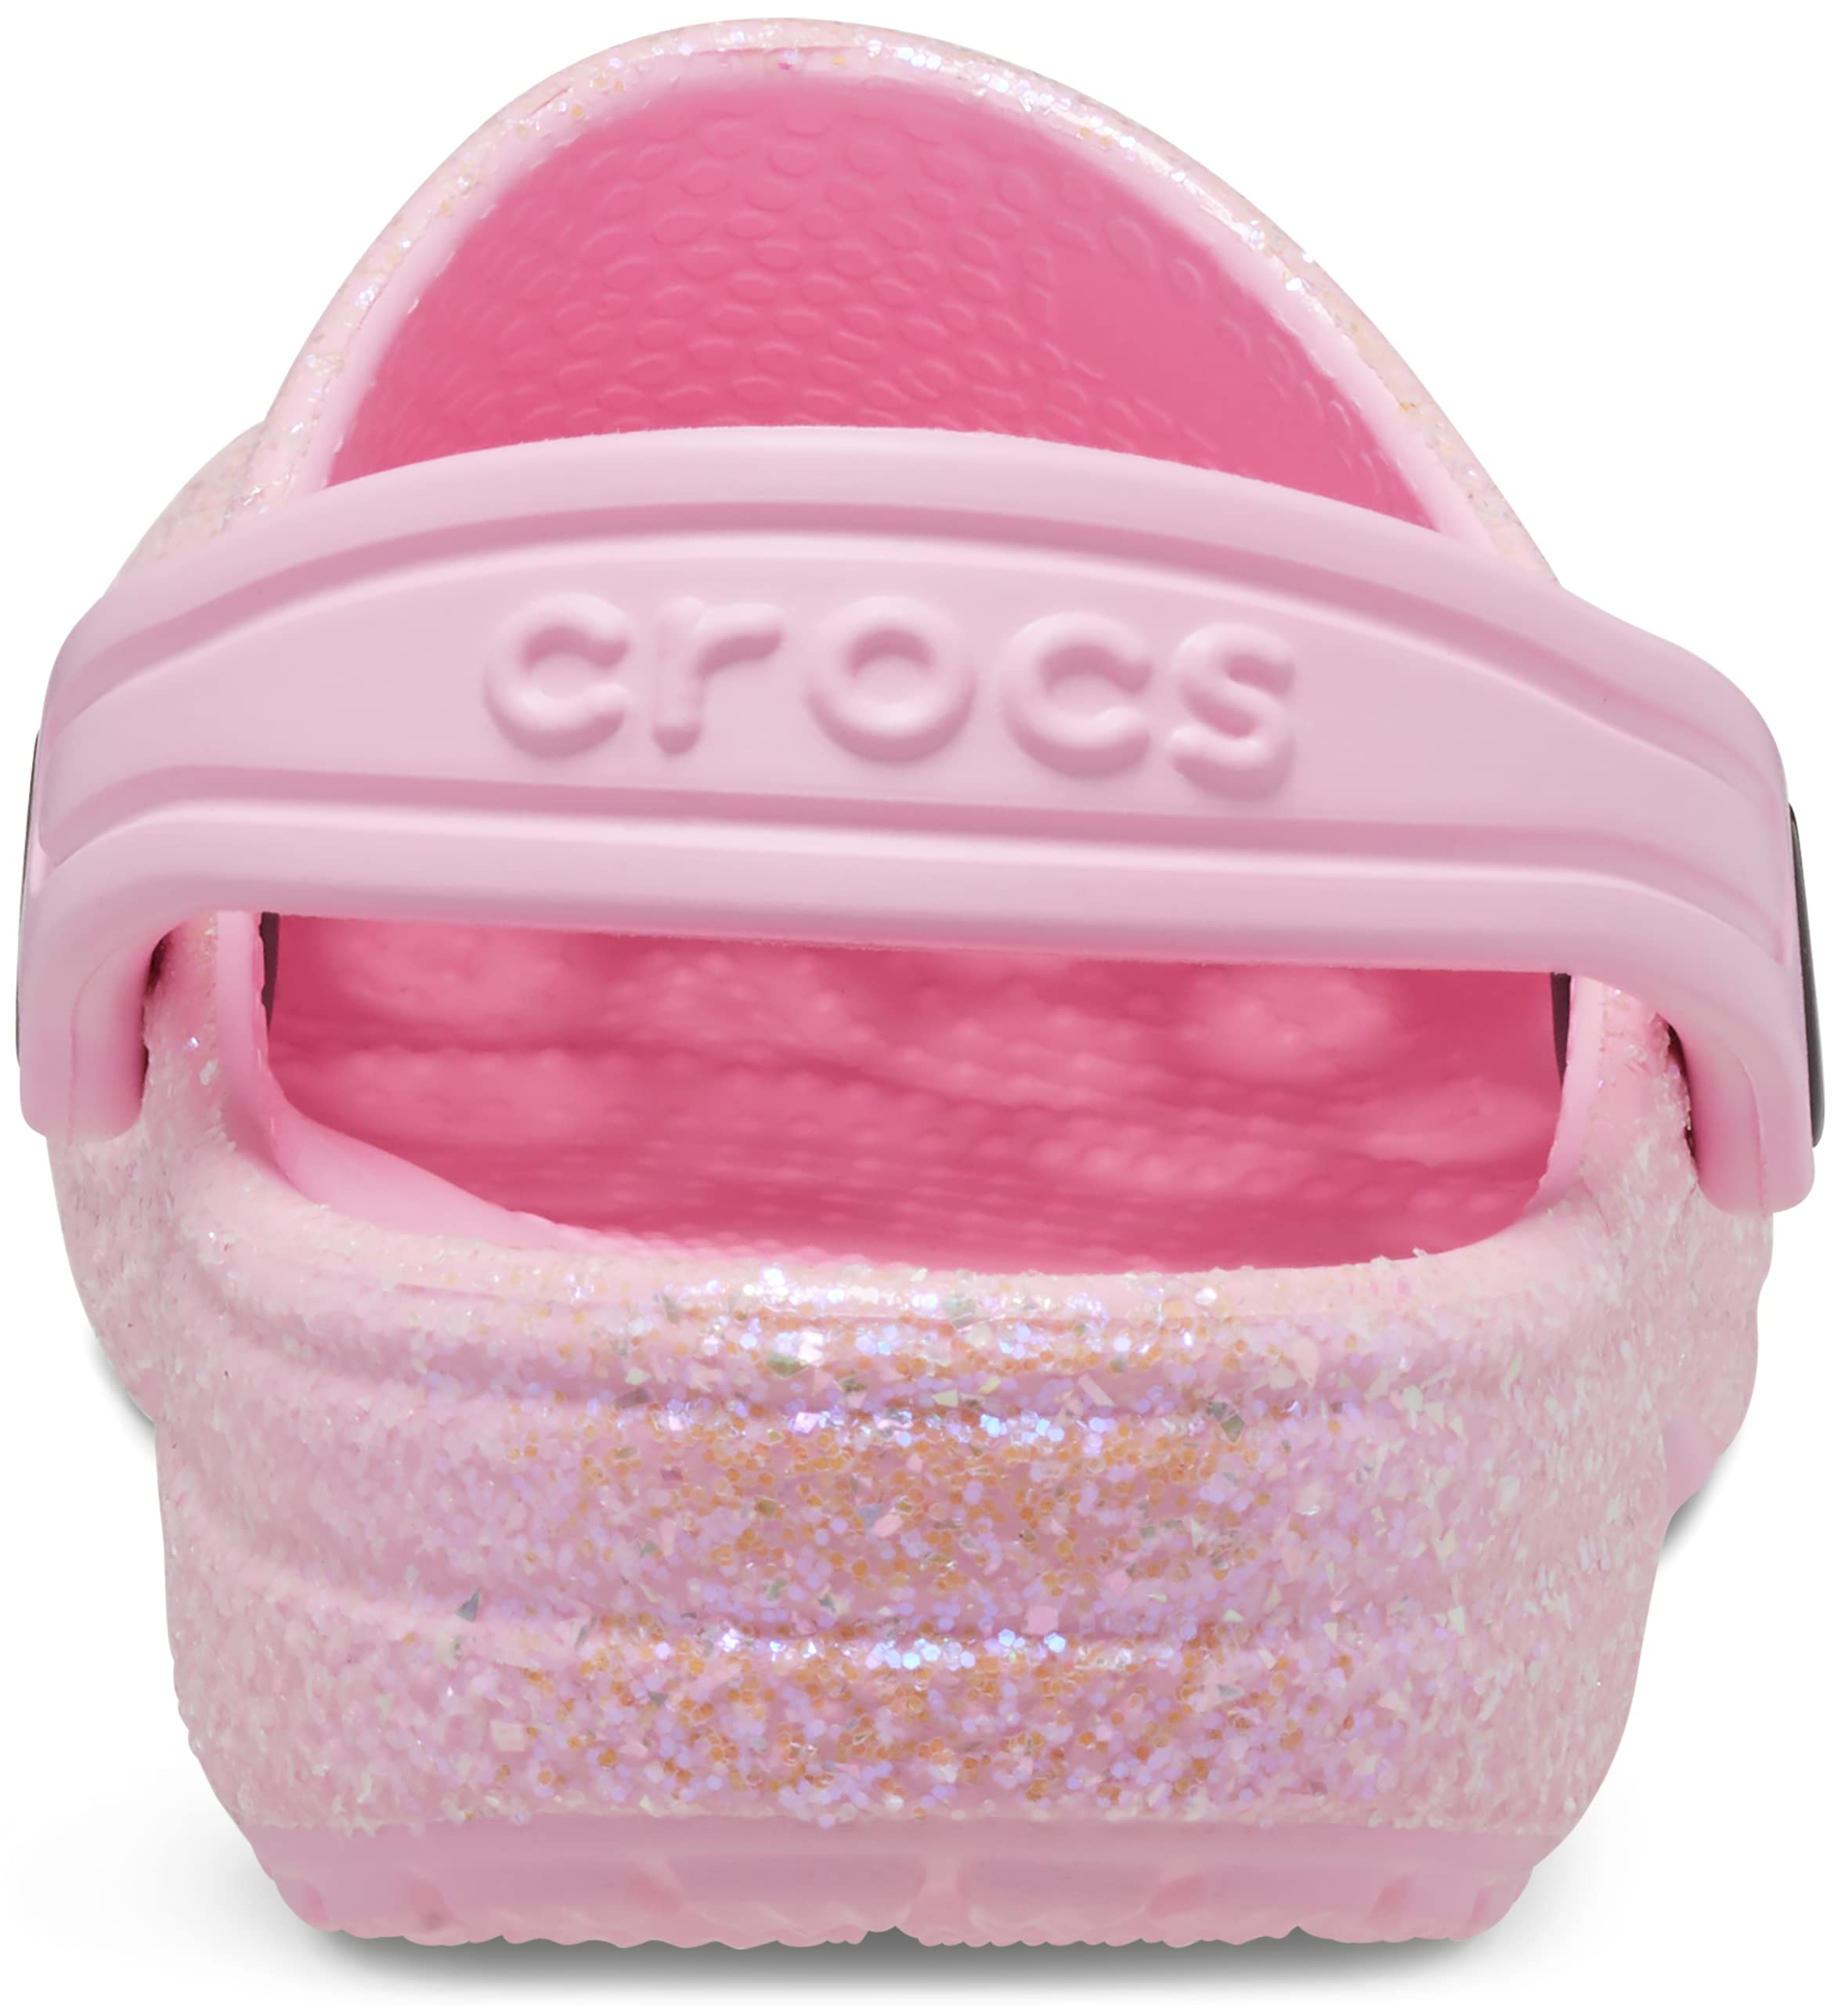 Crocs Unisex-Child Classic Glitter Clog (Little Big Kid)